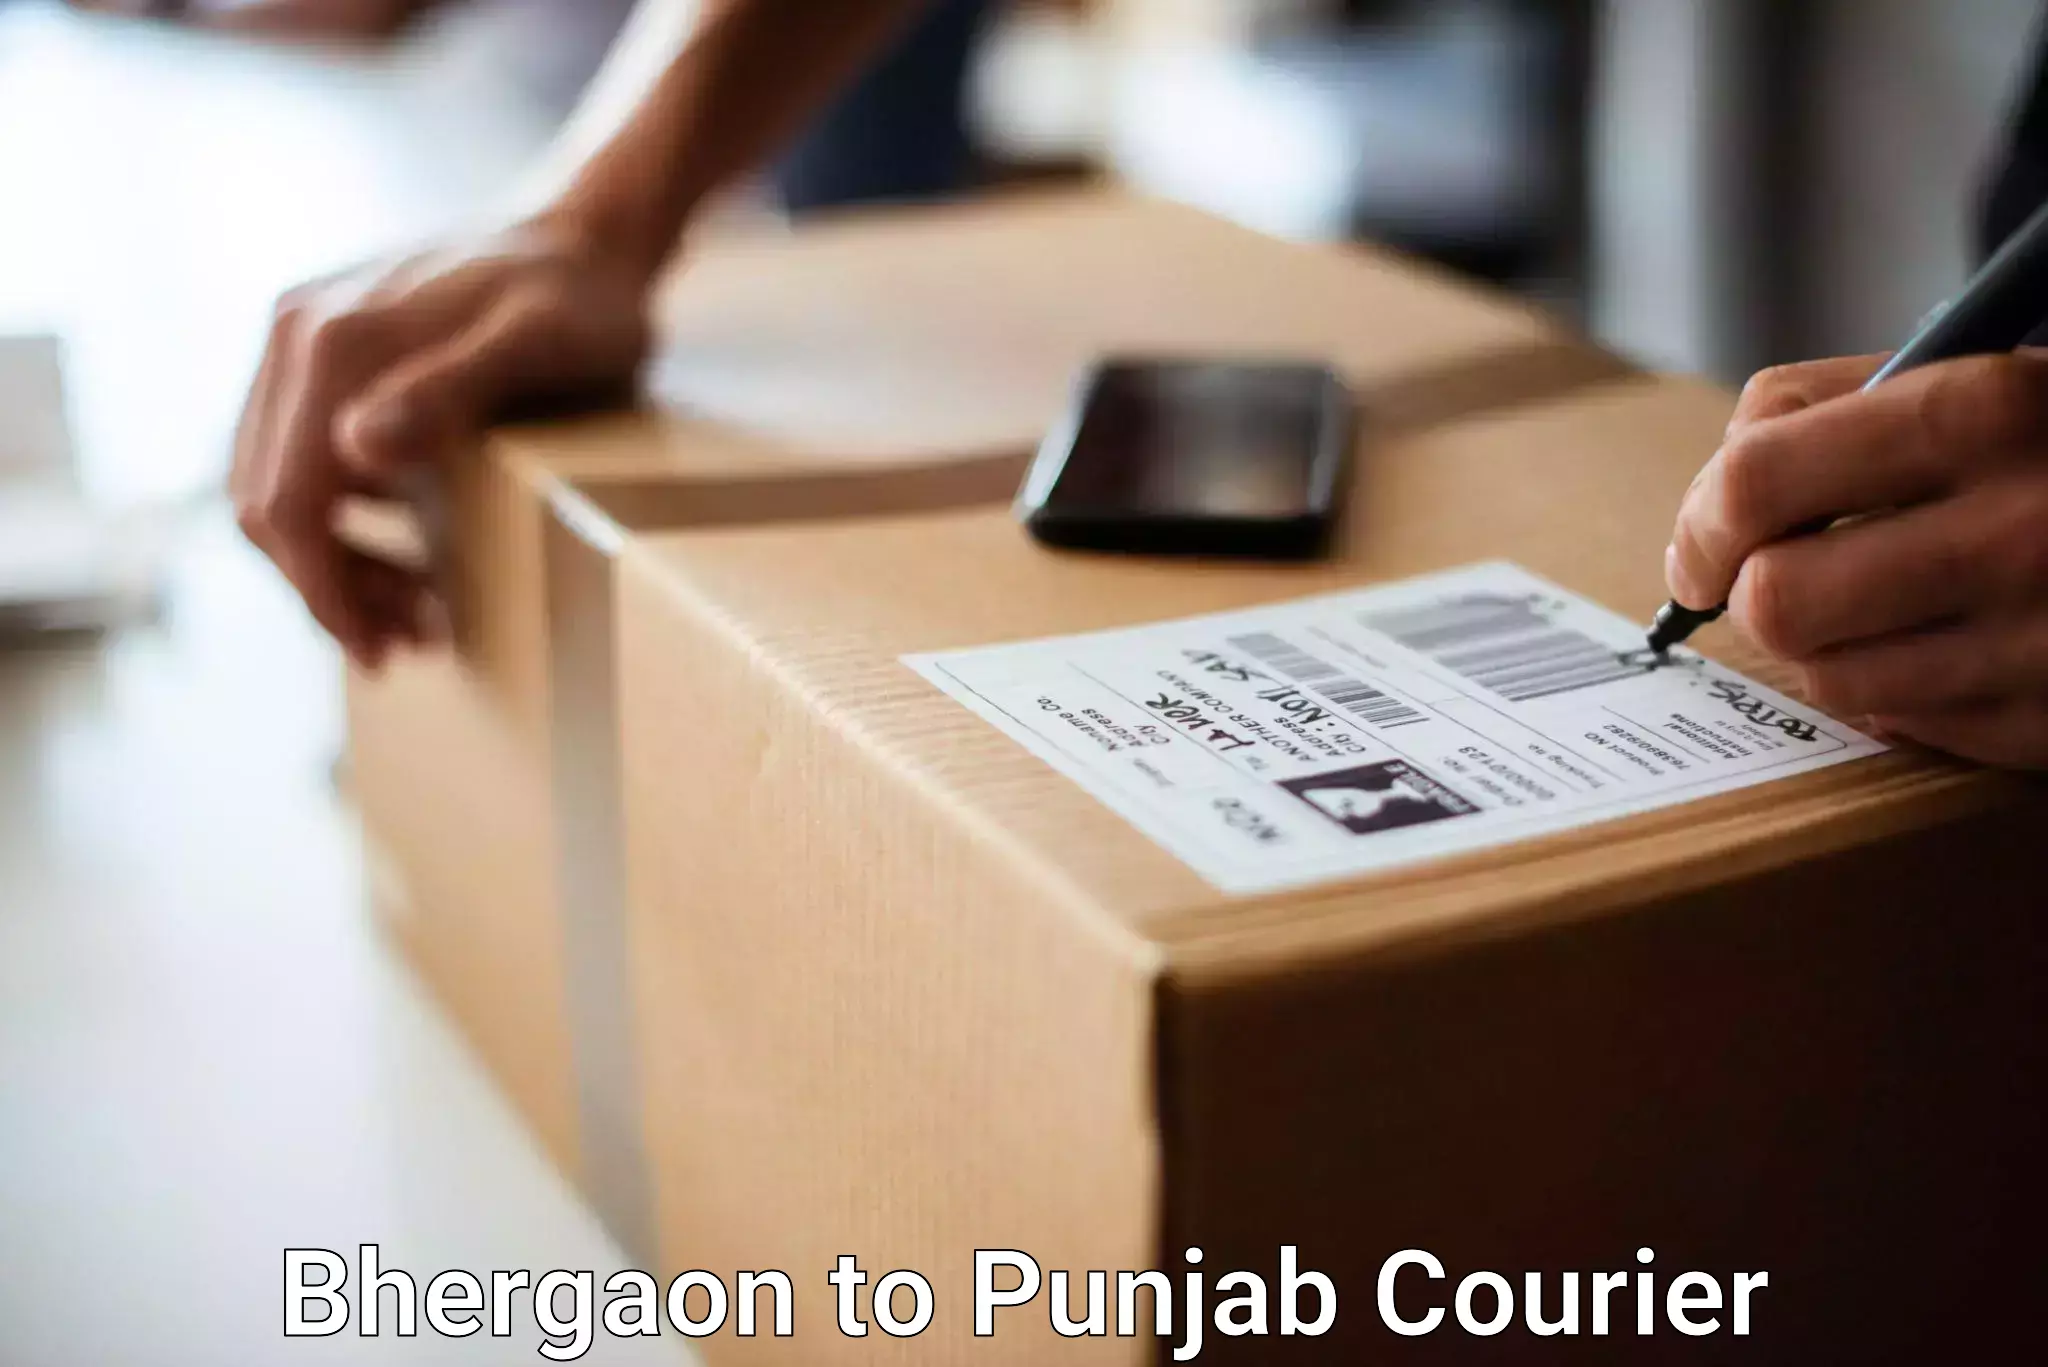 Luggage transport service Bhergaon to Central University of Punjab Bathinda